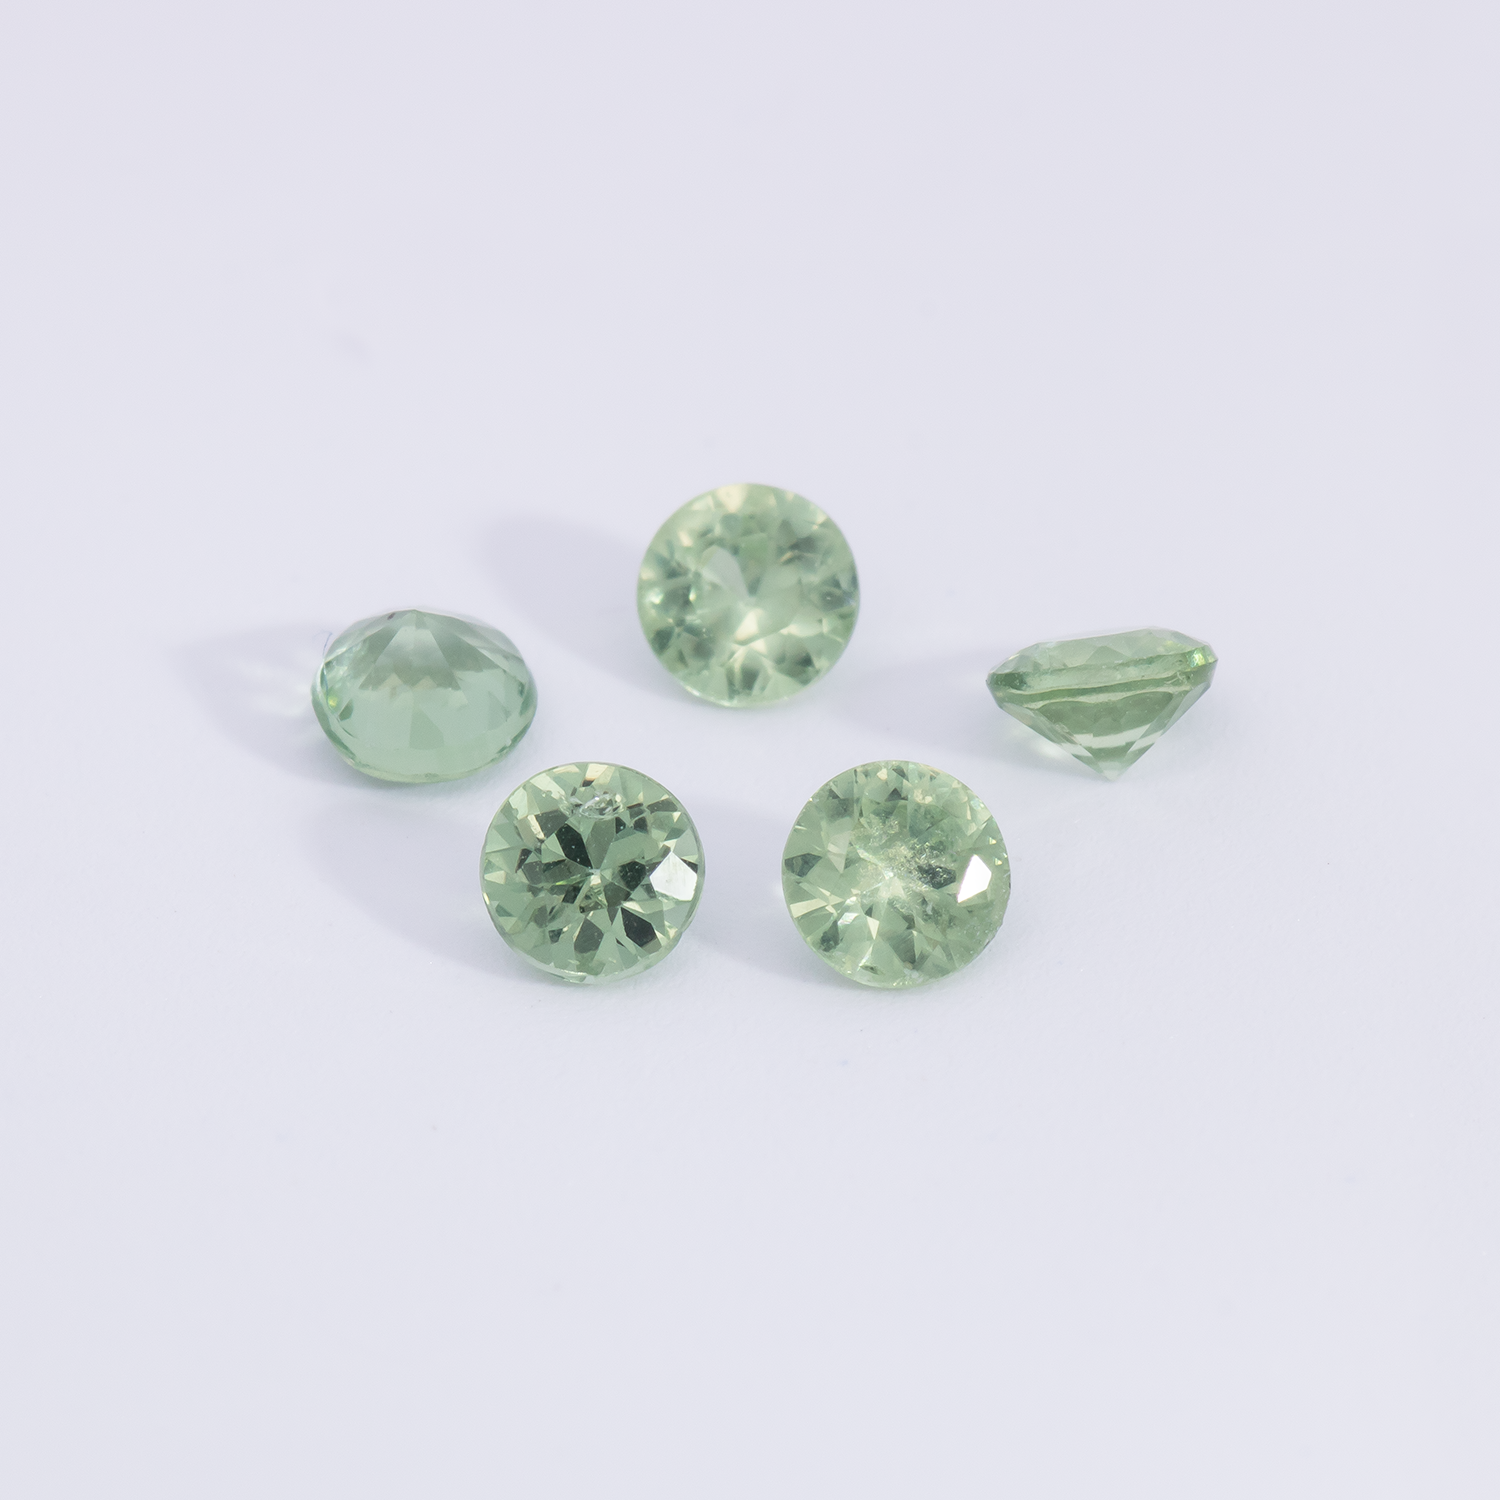 Saphir - grün, rund, 3x3 mm, 0.13 - 0.16 cts, Nr. XSR11258